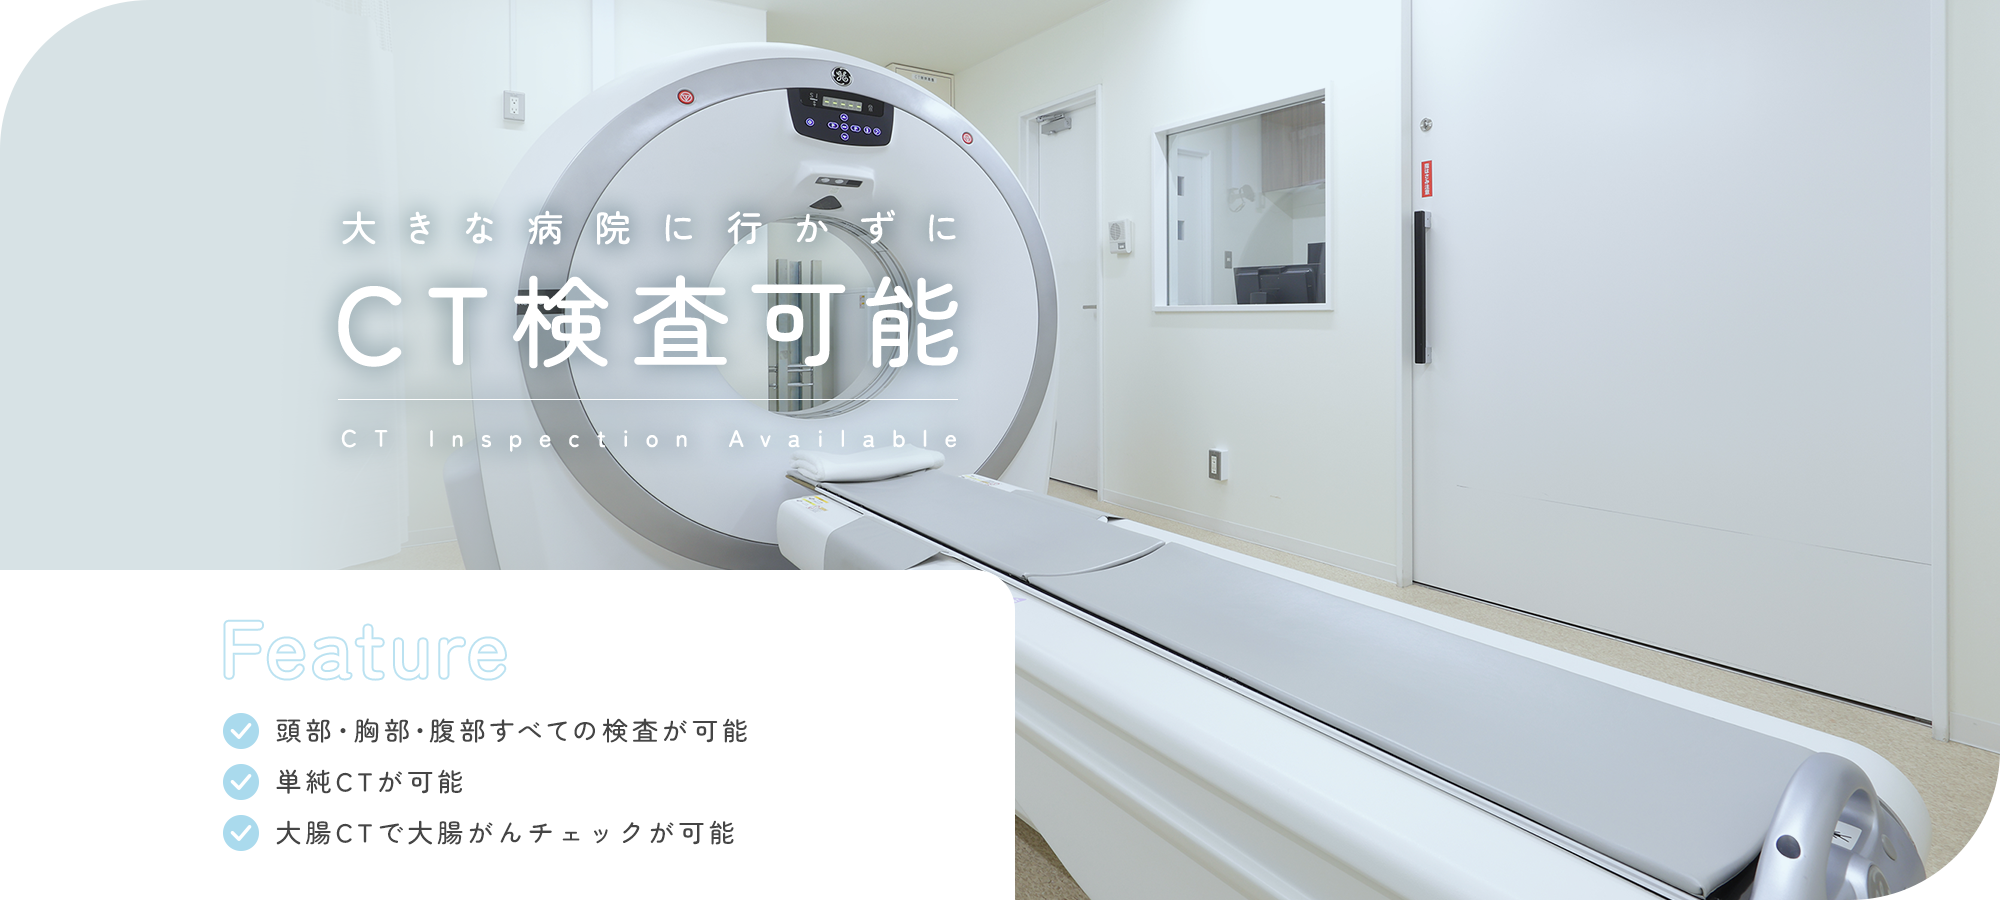 大きな病院に行かずにCT検査可能 CT Inspection Available Feature 頭部・胸部・腹部すべての検査が可能 単純CTが可能 大腸CTで大腸がんチェックが可能